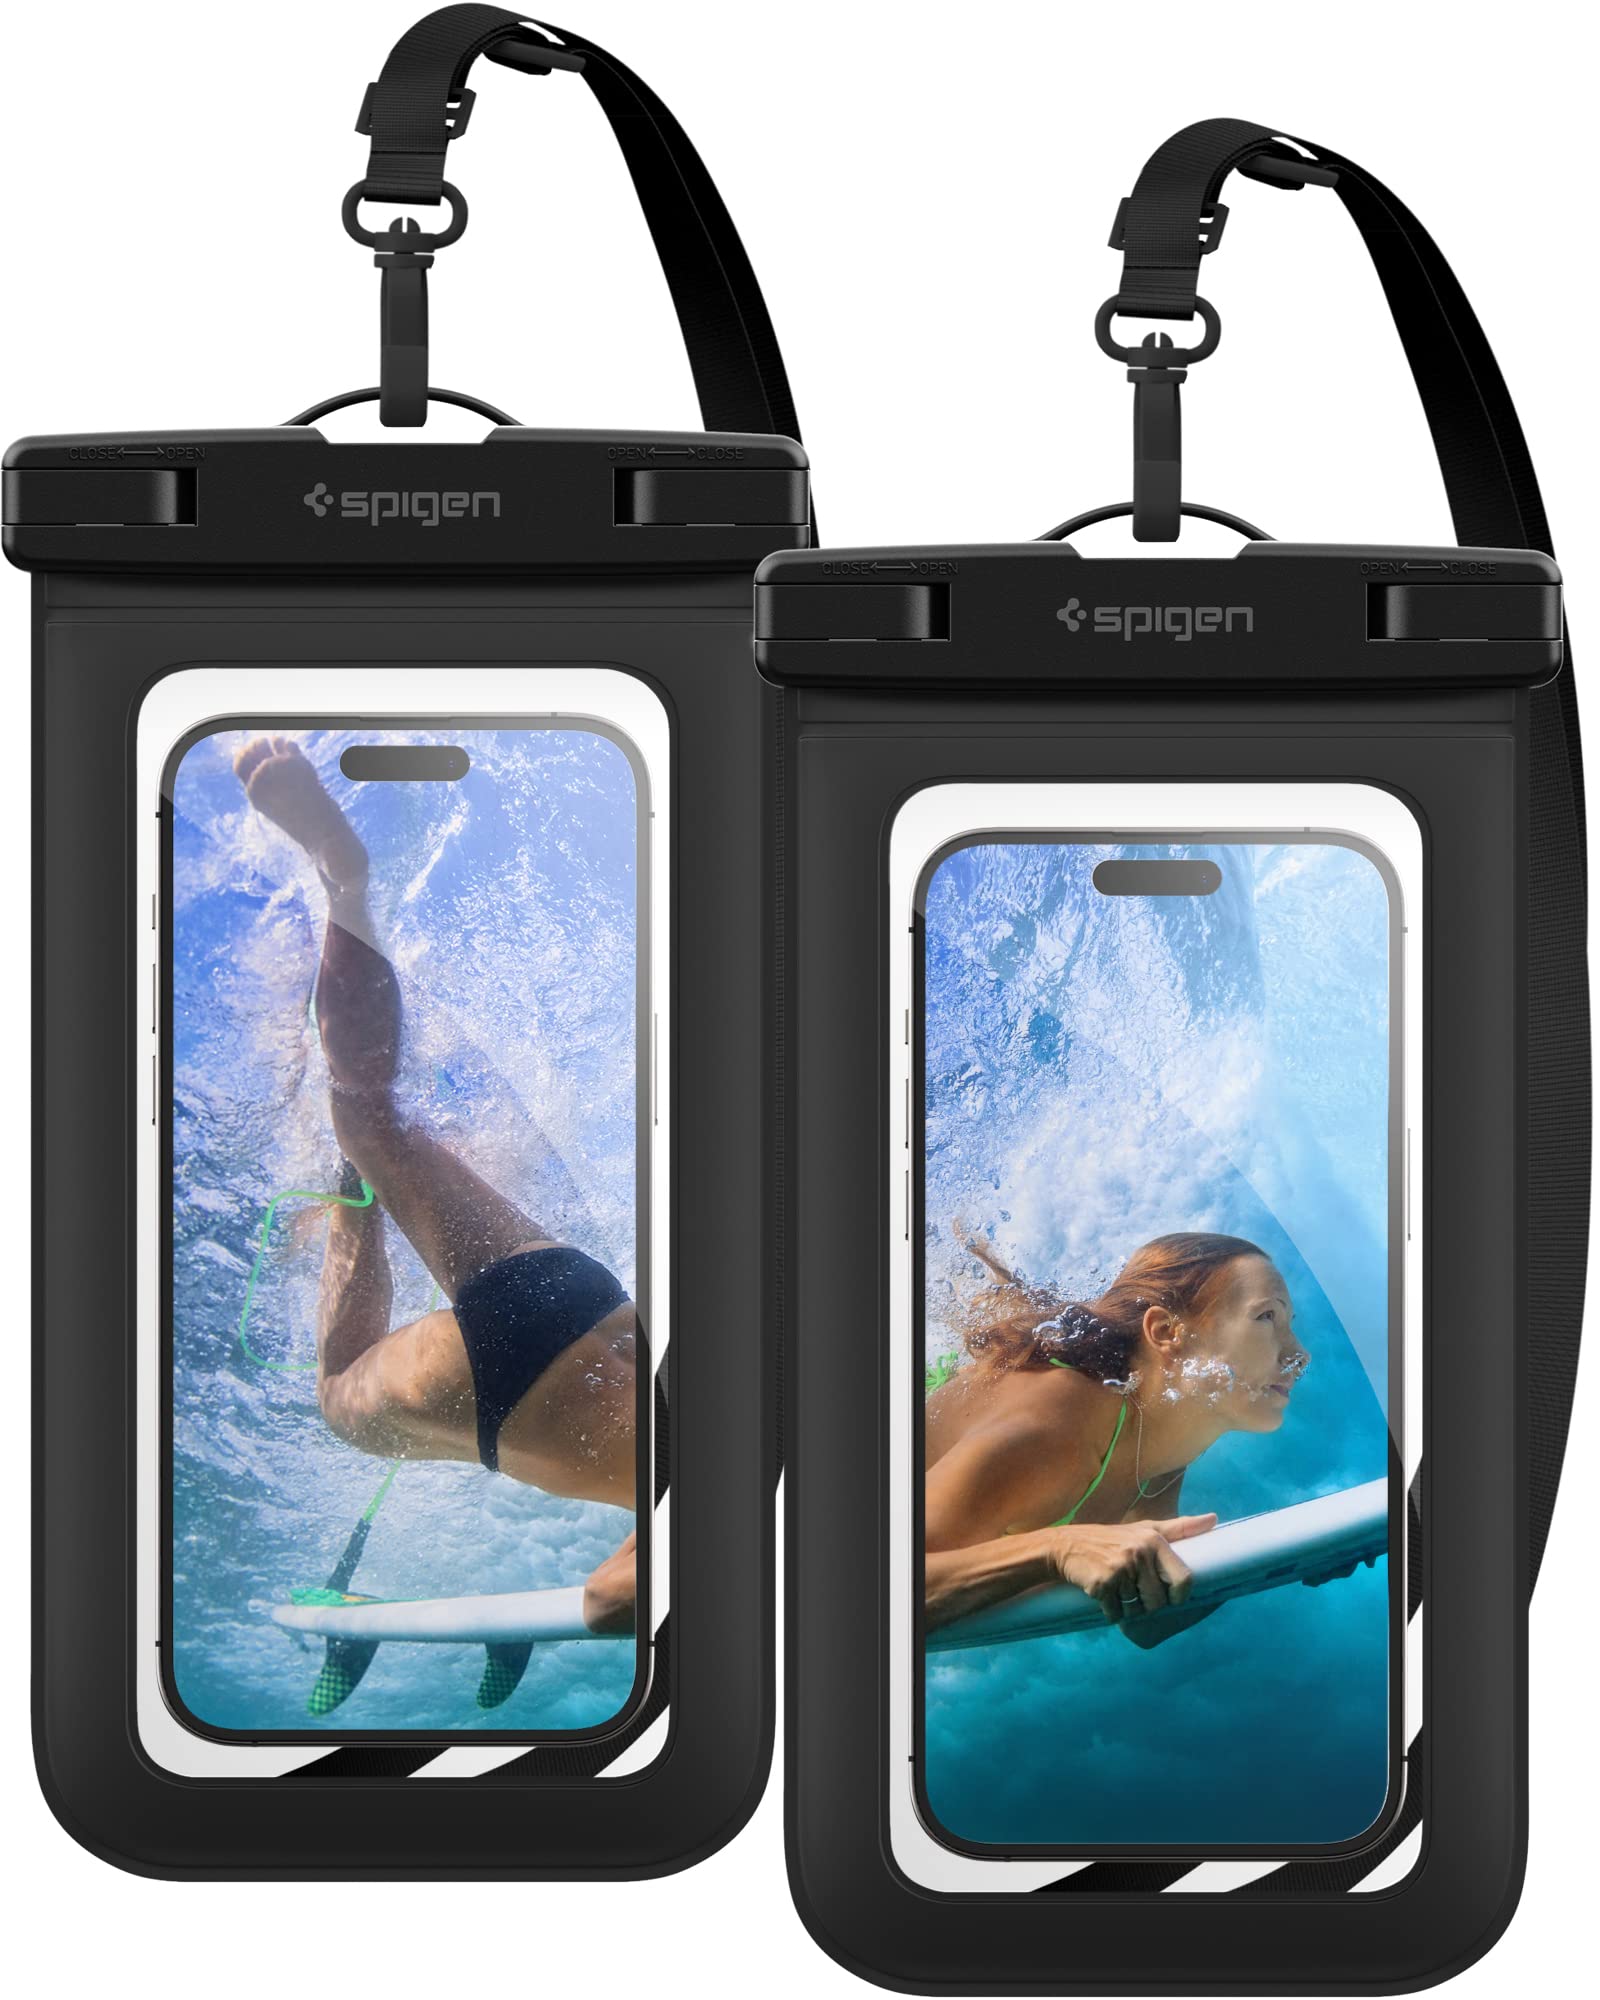 楽天FleumeSpigen スマホ 防水ケース 小物 iPhone Android 最大 8.2インチ対応 タッチ可 顔認証 密封、水中撮影 お風呂 温泉 釣り 海に適用 IPX8認定 完全防水 ネックストラップ付属 AMP04523 （ブラック）